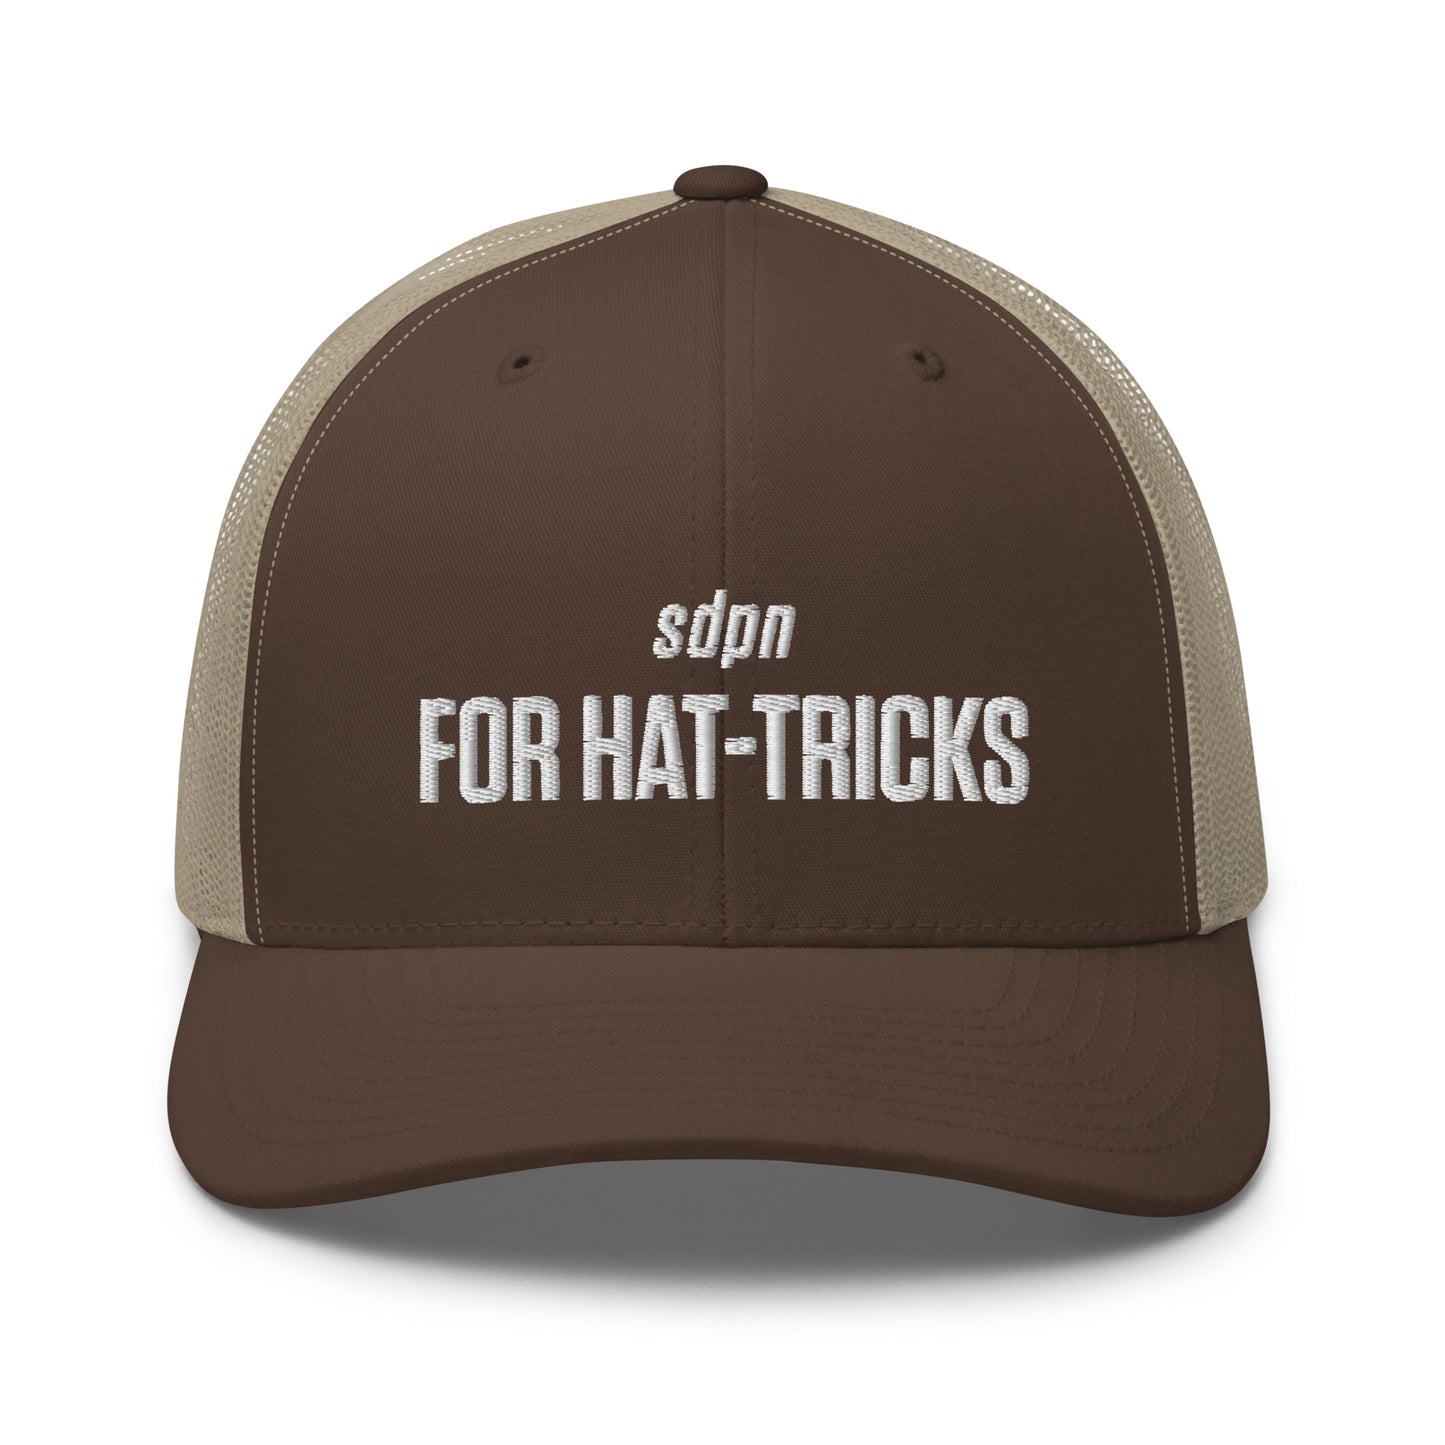 For Hat-Tricks Trucker Cap